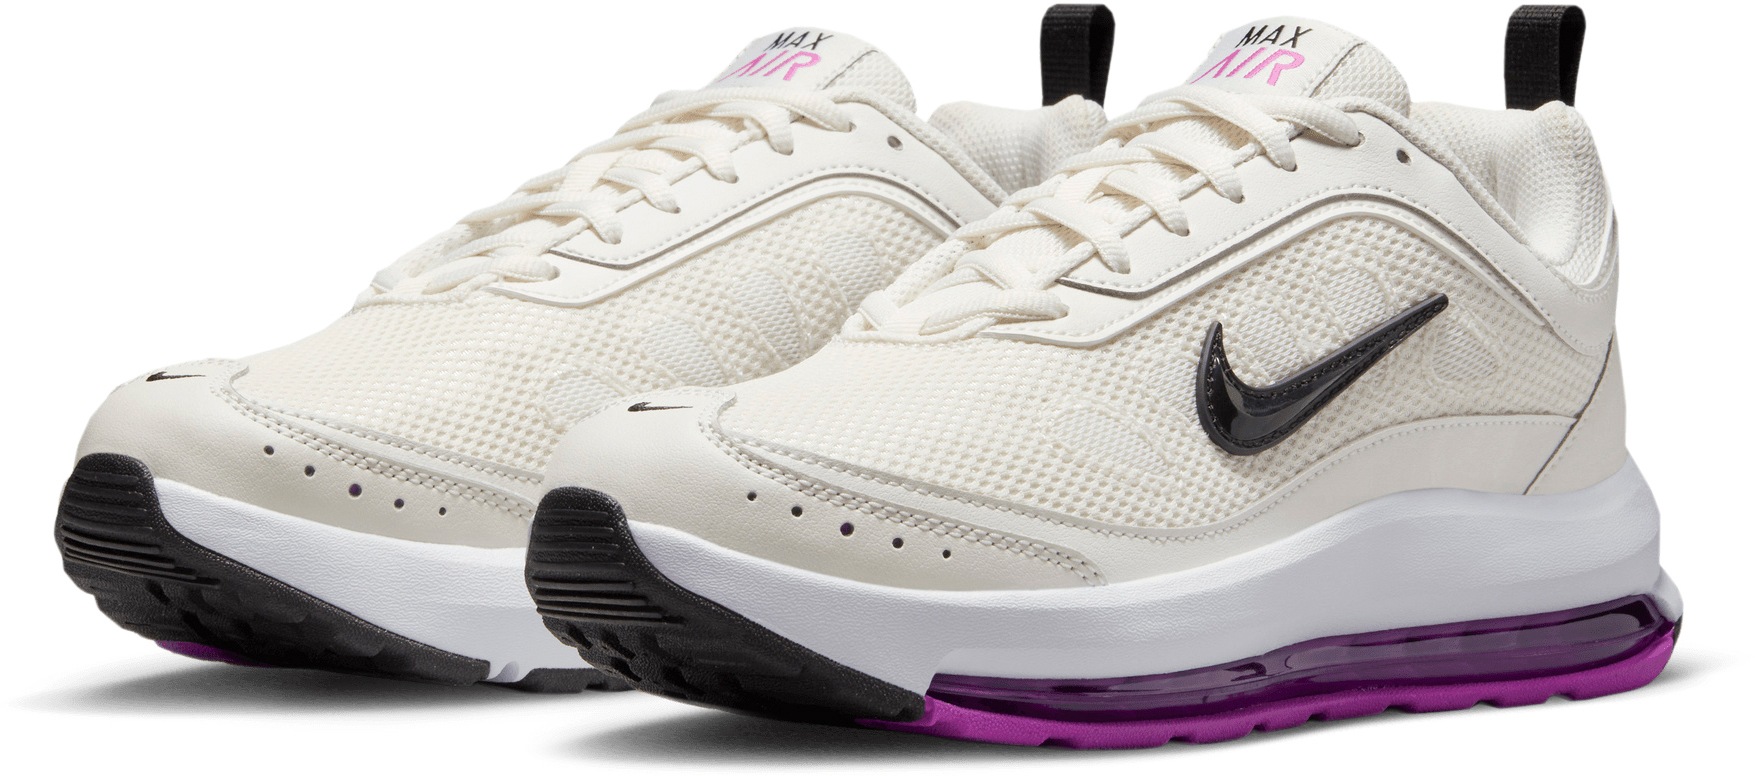 AP« MAX Sneaker Sportswear »AIR online kaufen Nike